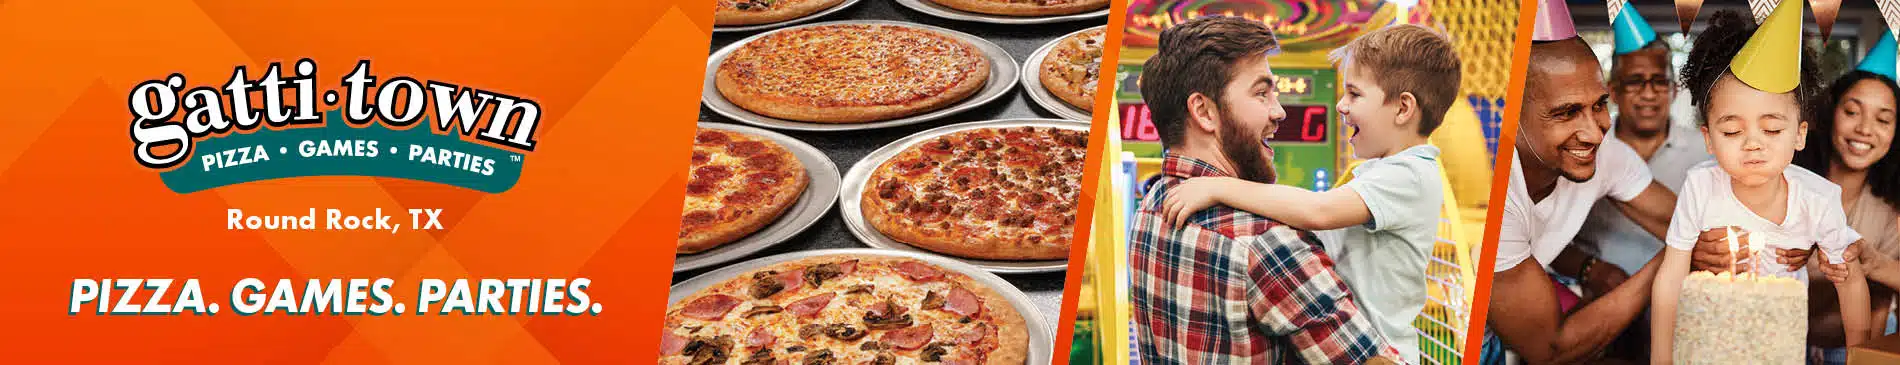 Mr Gatti's Pizza Mr Gatti's Pizza Gattitown Round Rock is your destination for Pizza Buffet, Games, Parties and More!